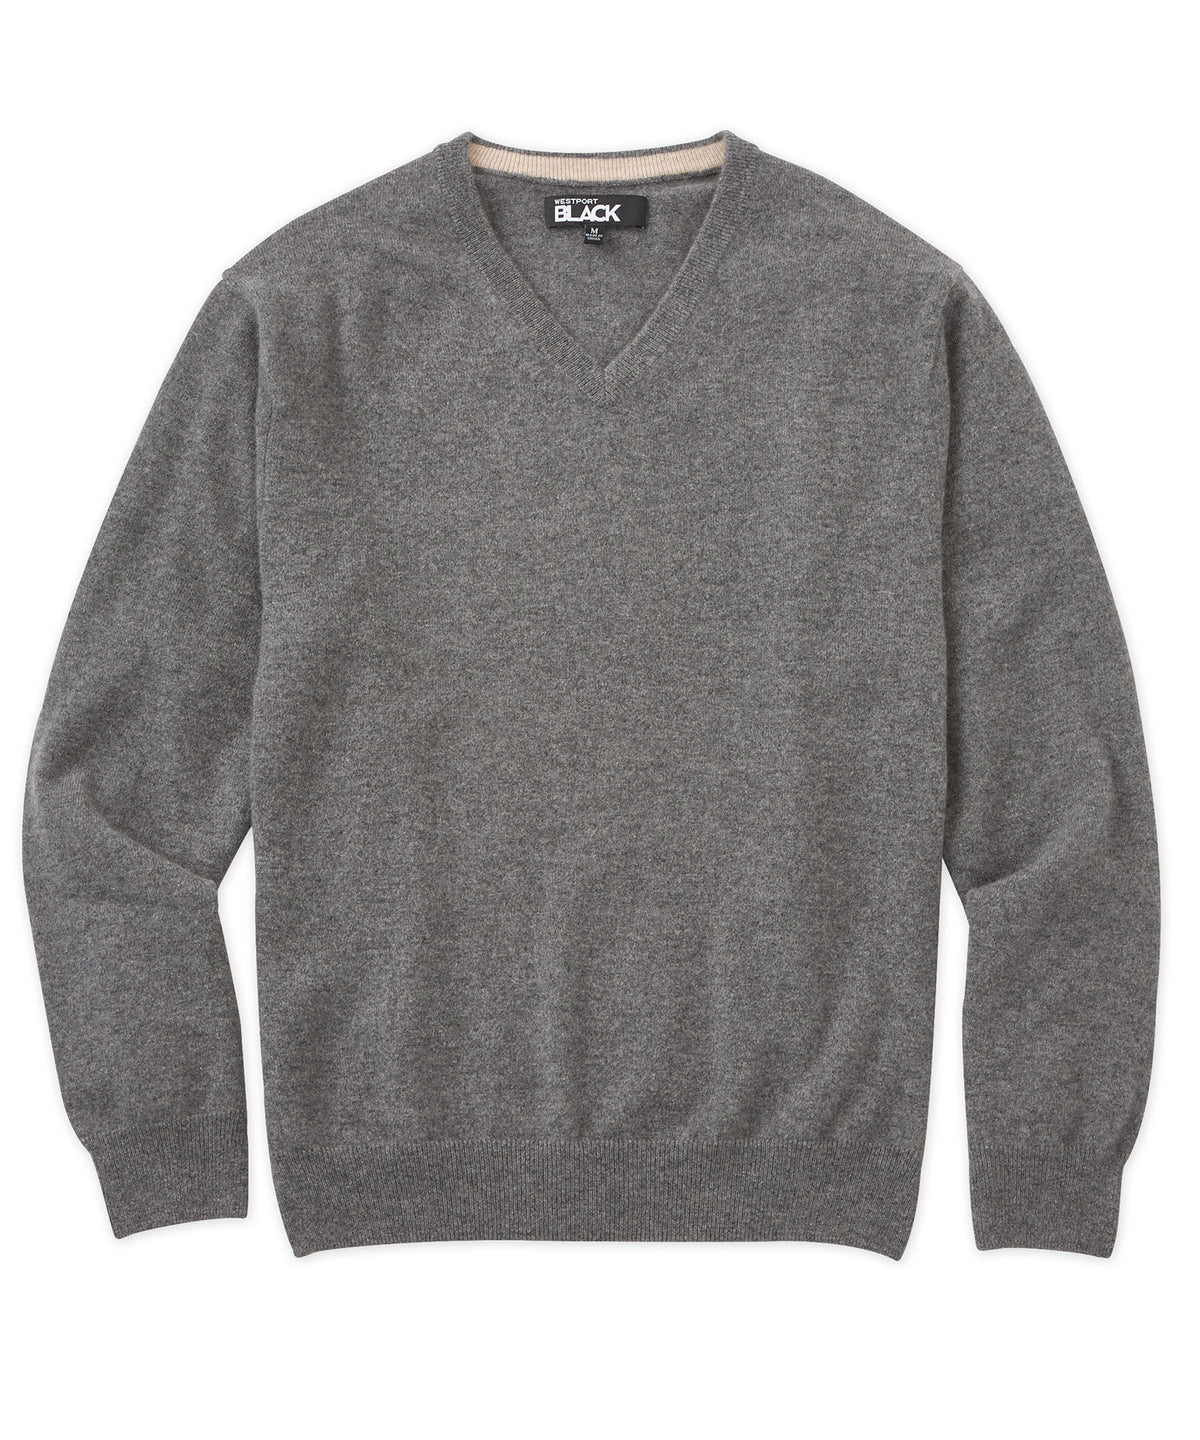 Westport Black Cashmere V-Neck Sweater, Big & Tall